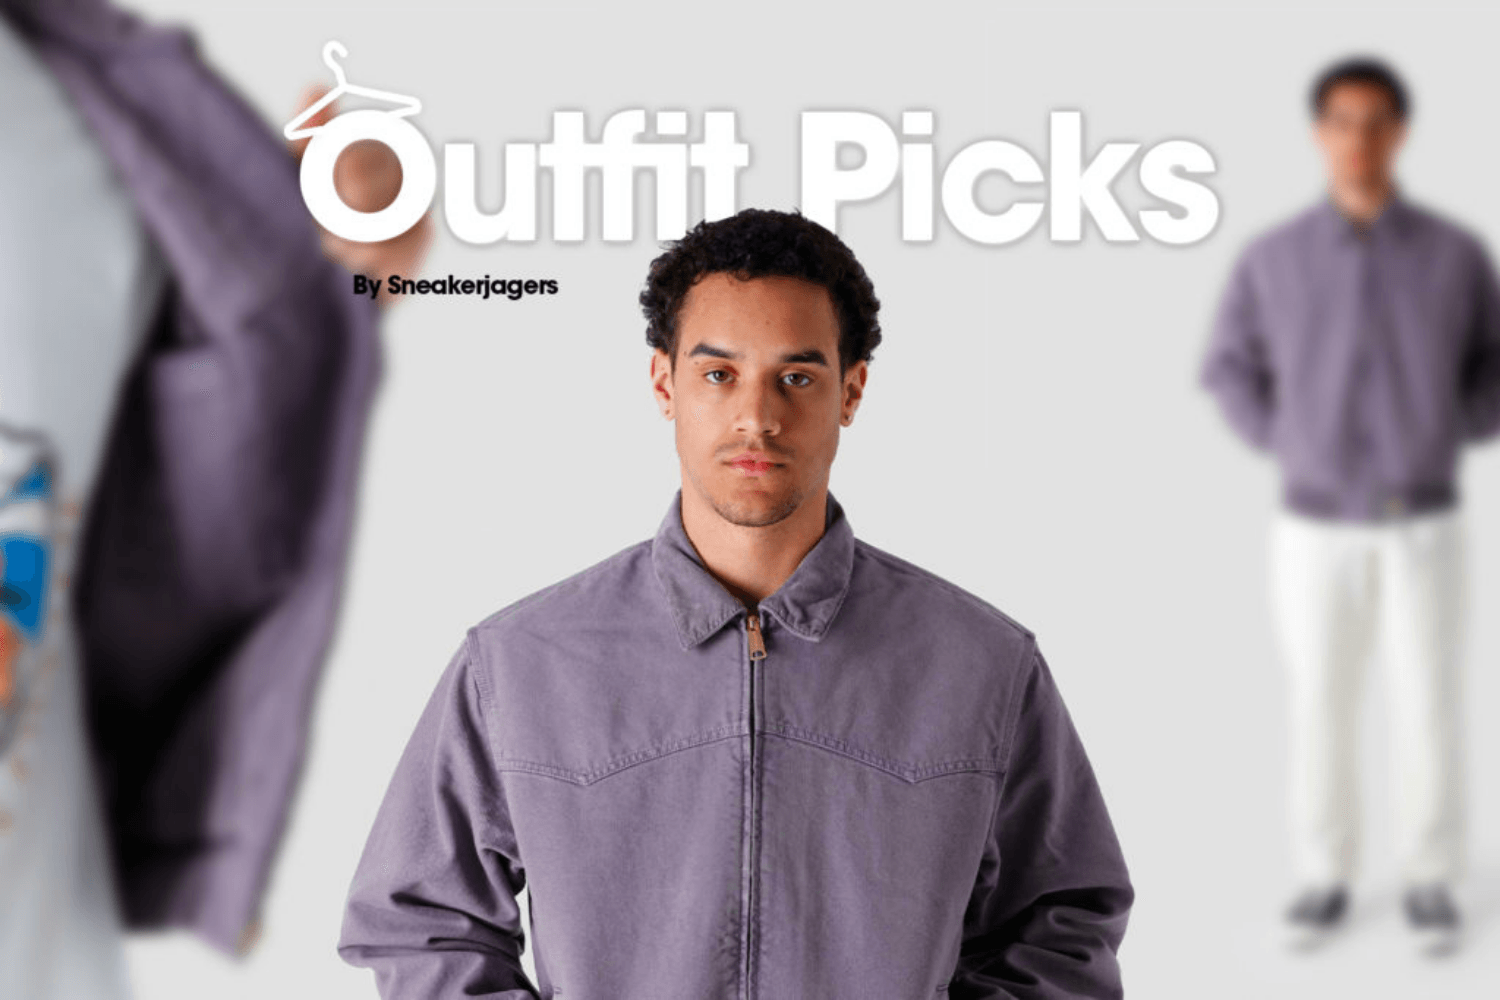 Outfit Picks by Sneakerjagers - Week 15